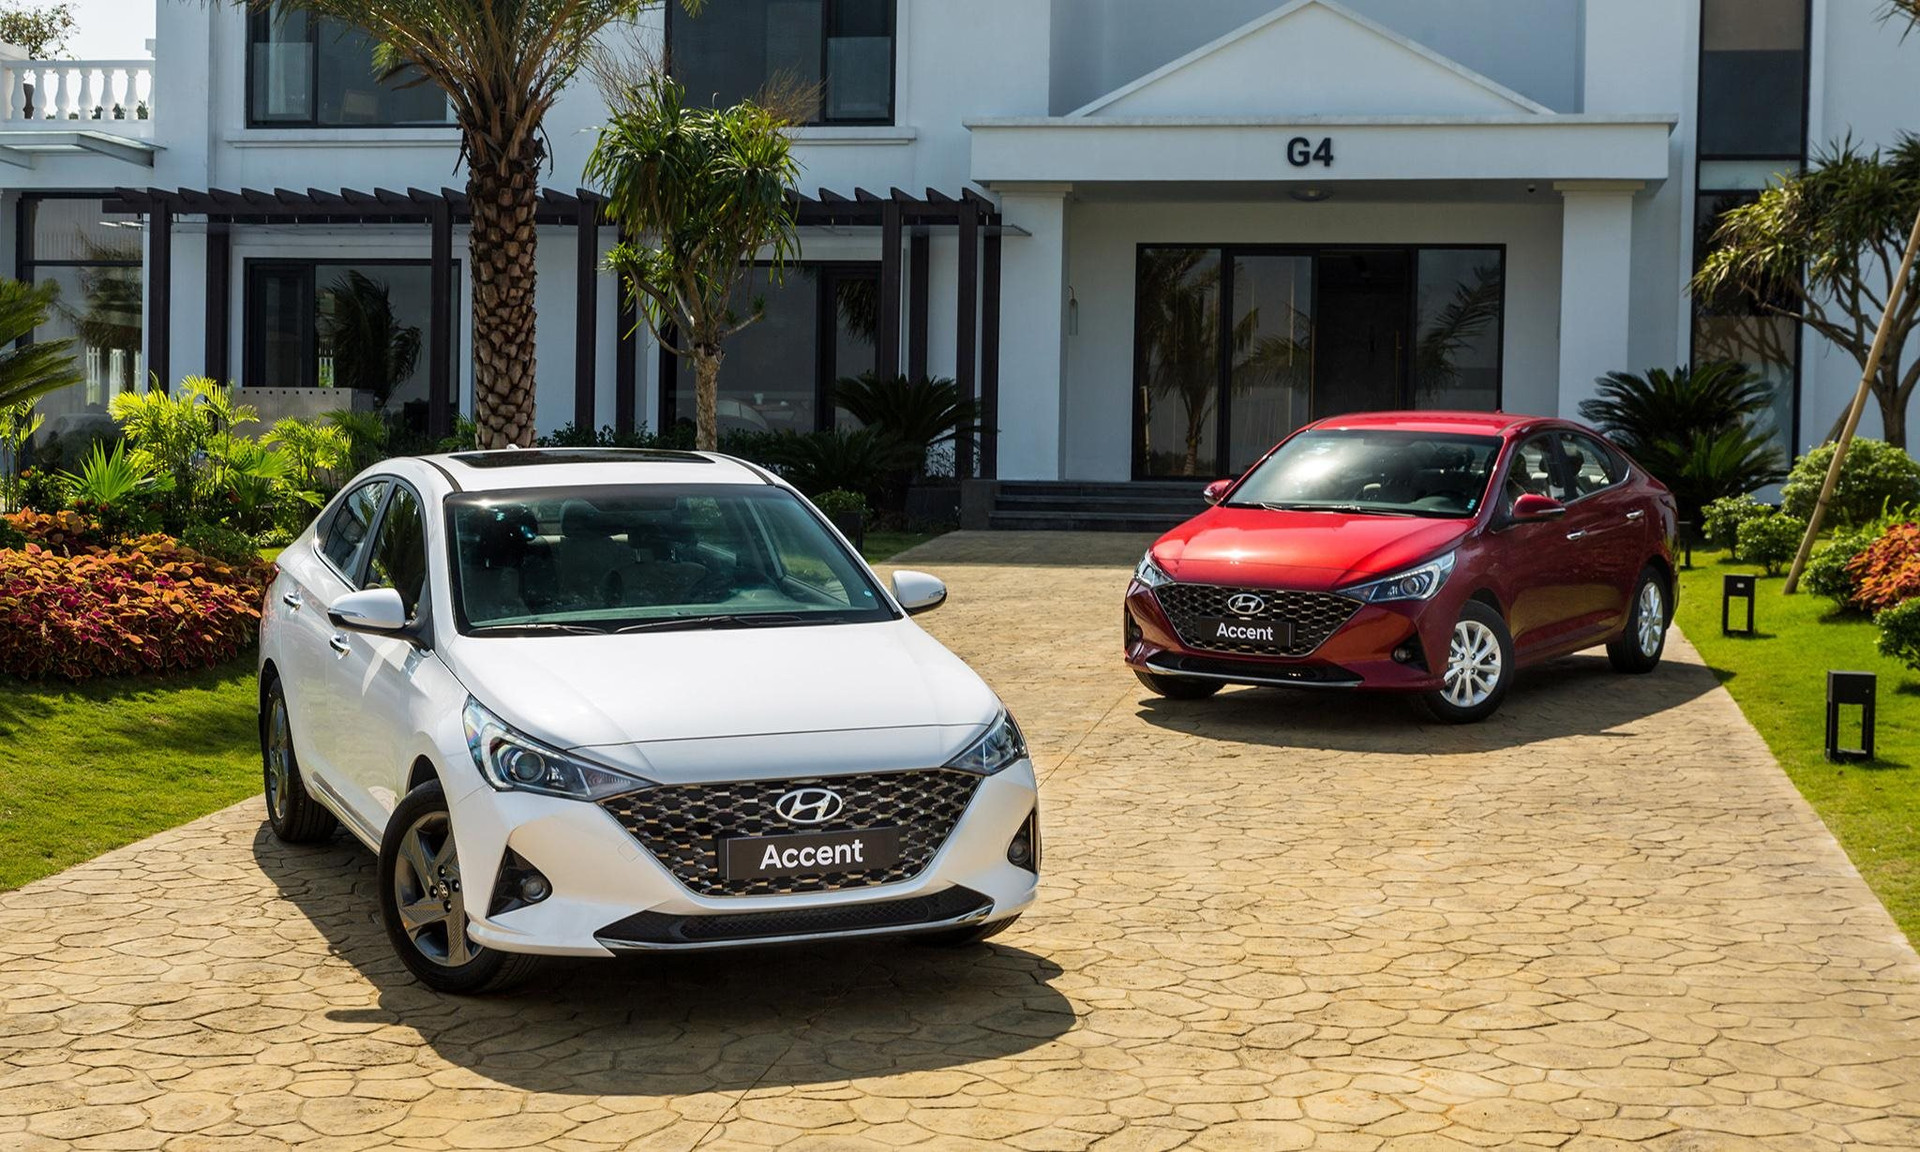 Hyundai bán xe nhiều gấp đôi tháng trước, chốt đơn 10.000 xe trong quý đầu năm, Accent thống trị doanh số - Ảnh 1.